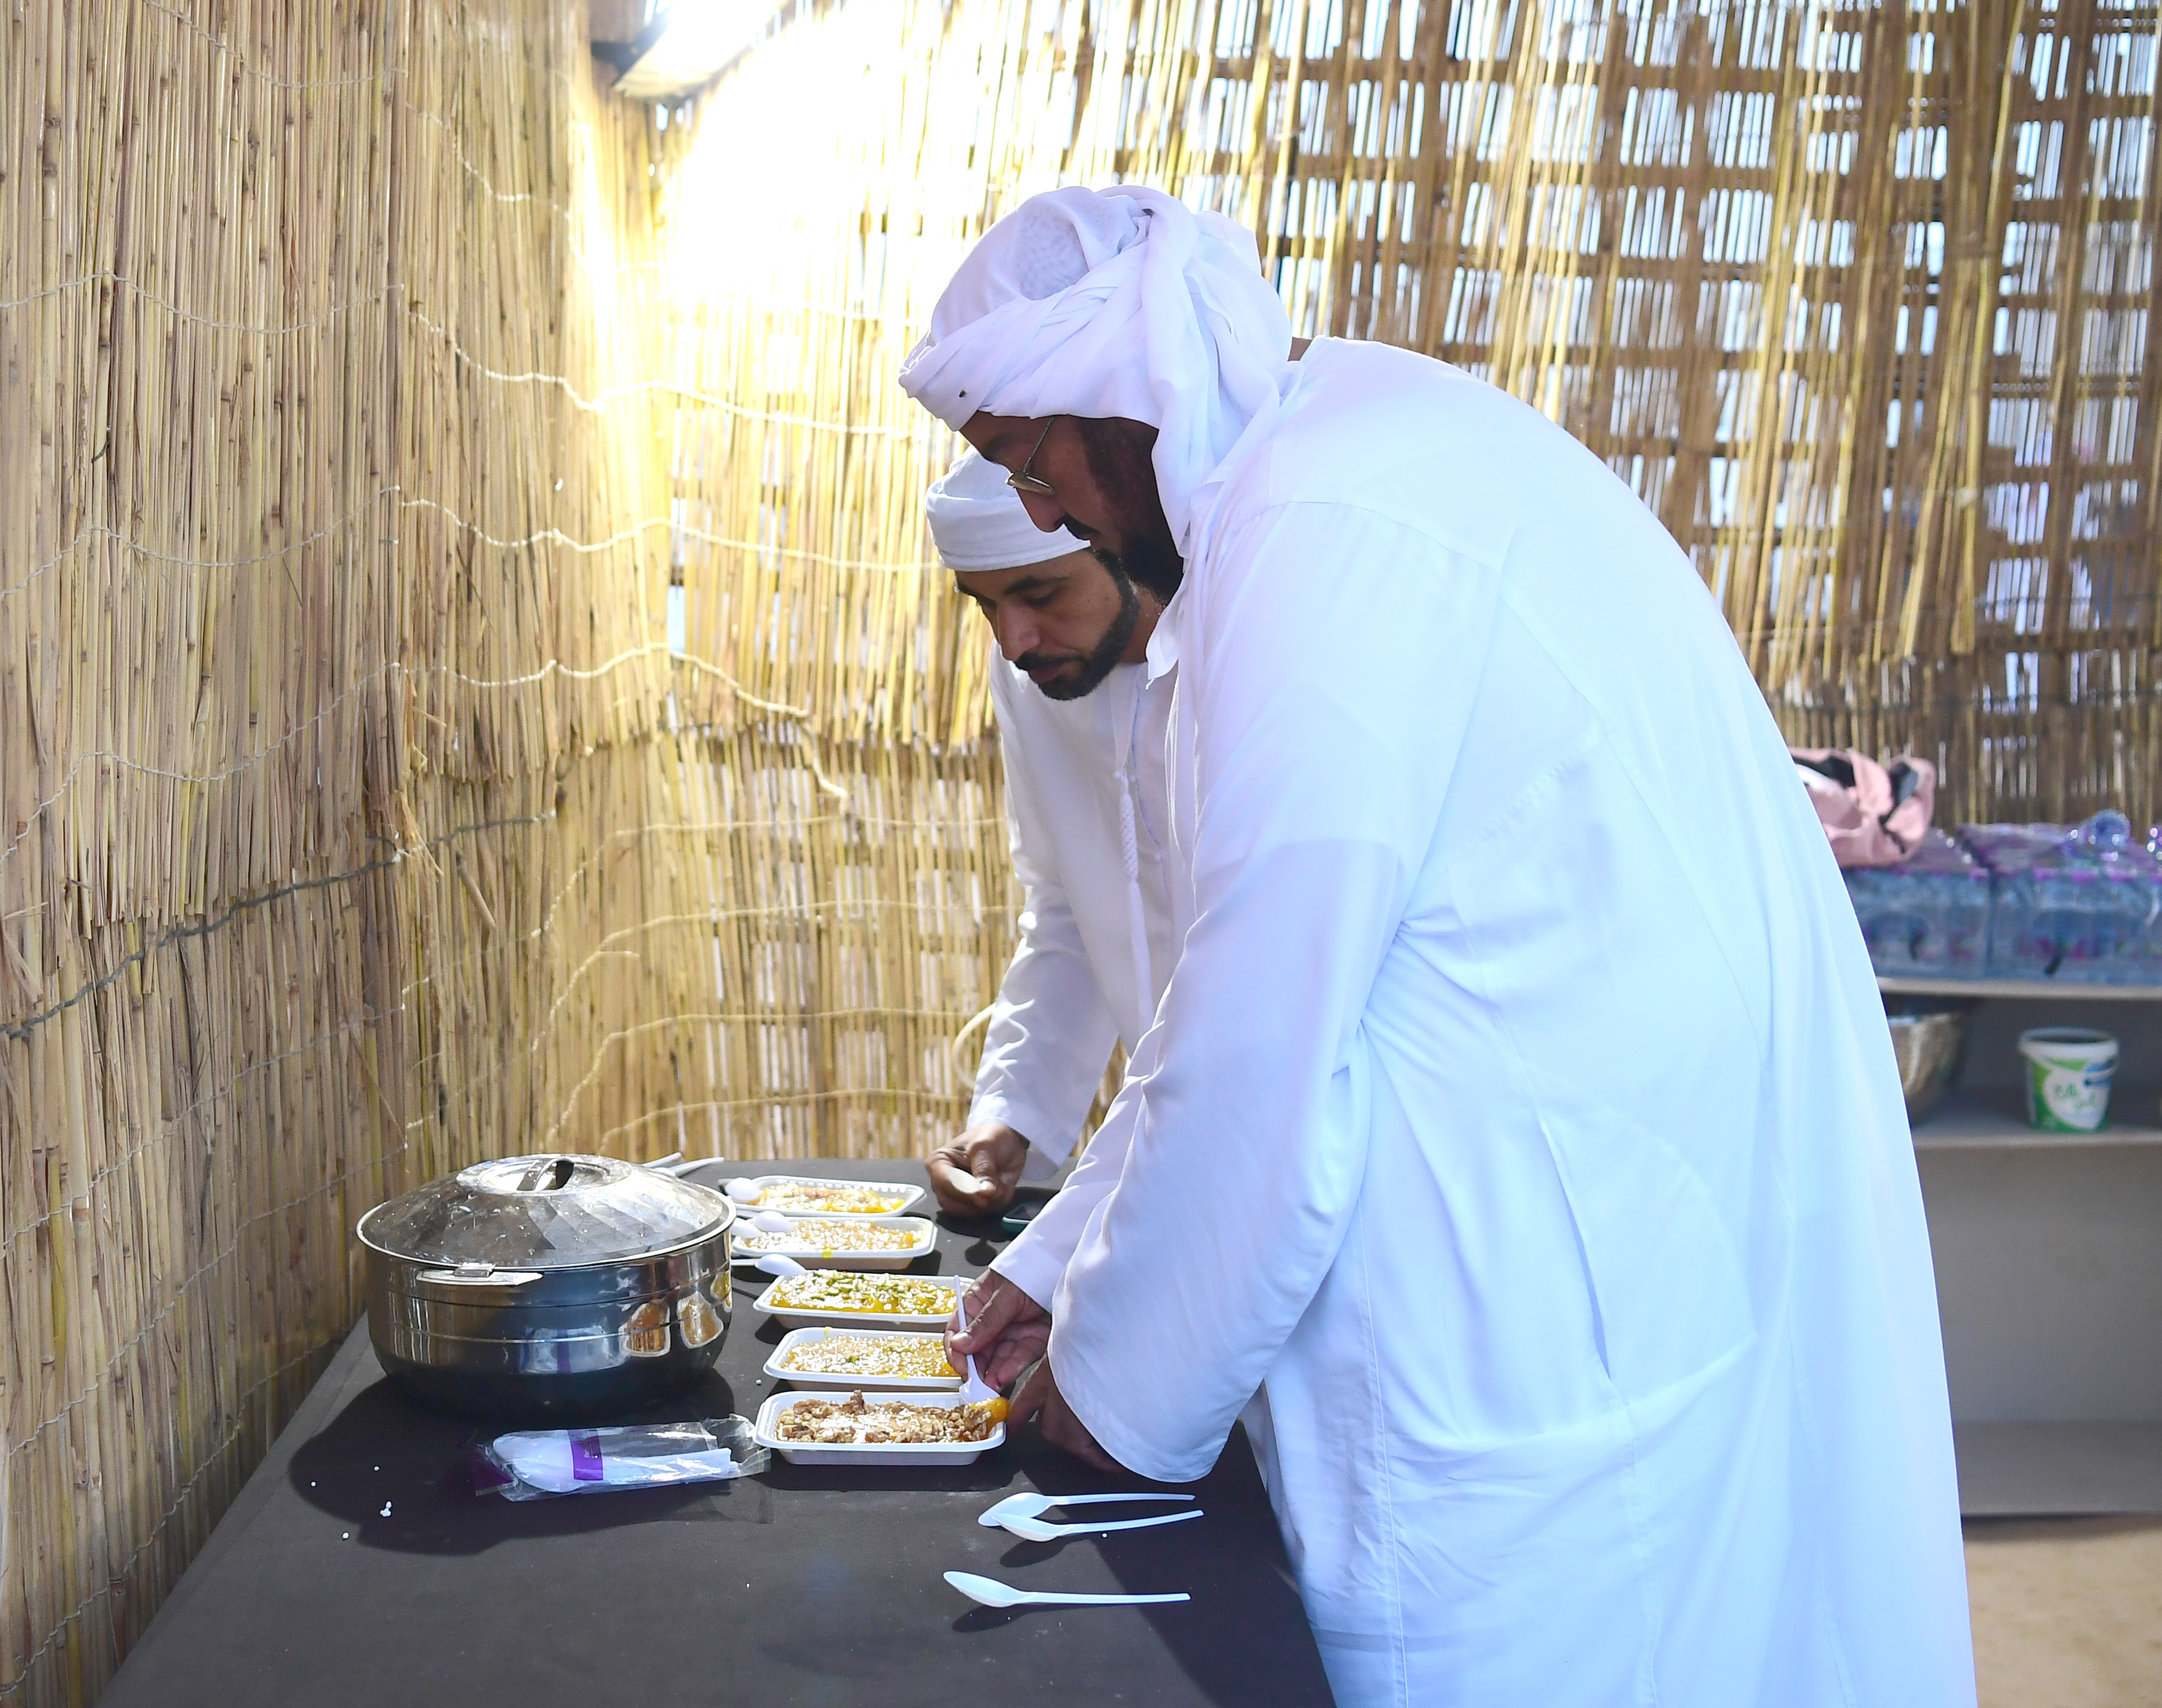 الطبخ في مهرجان دلما التاريخي.. أبعاد حضارية لثقافة الغذاء